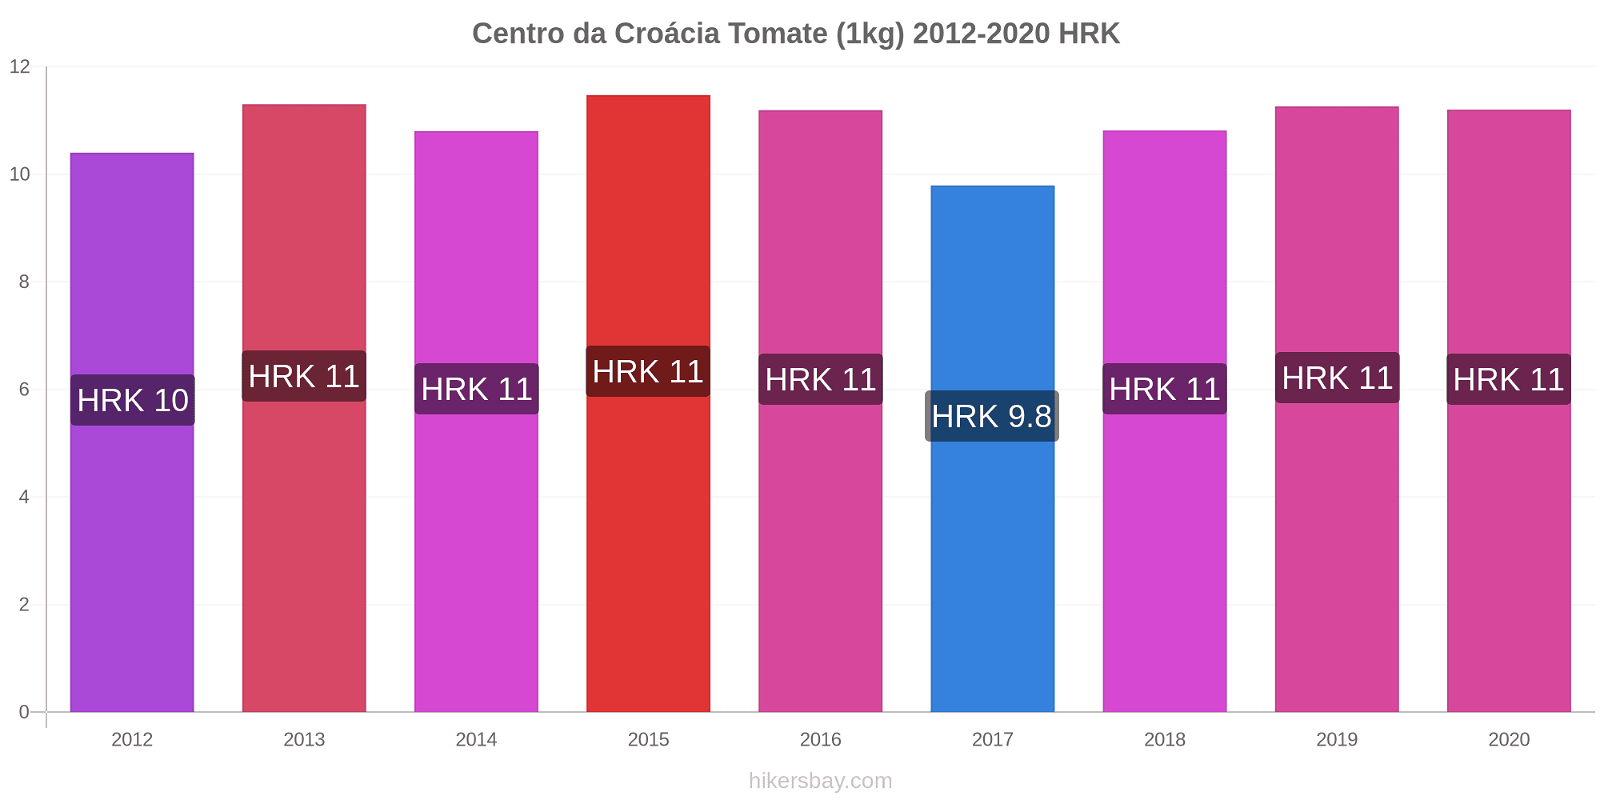 Centro da Croácia variação de preço Tomate (1kg) hikersbay.com